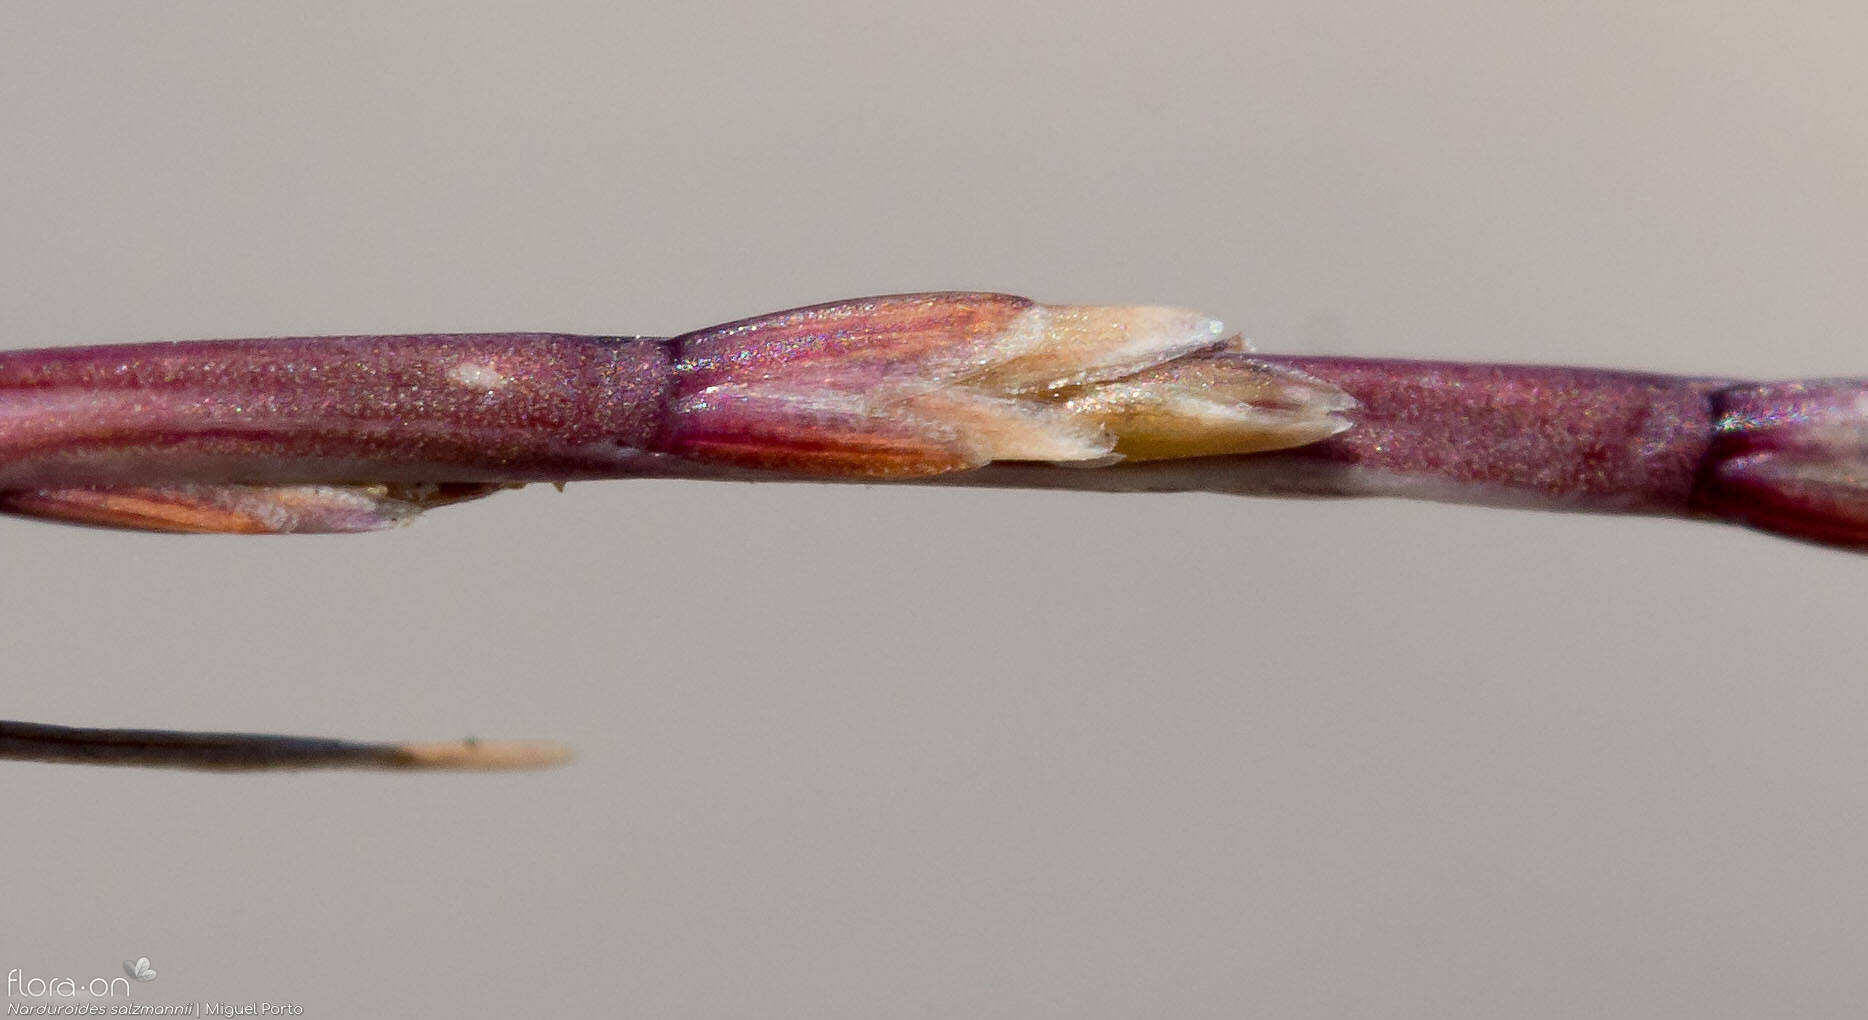 Narduroides salzmannii - Flor (close-up) | Miguel Porto; CC BY-NC 4.0